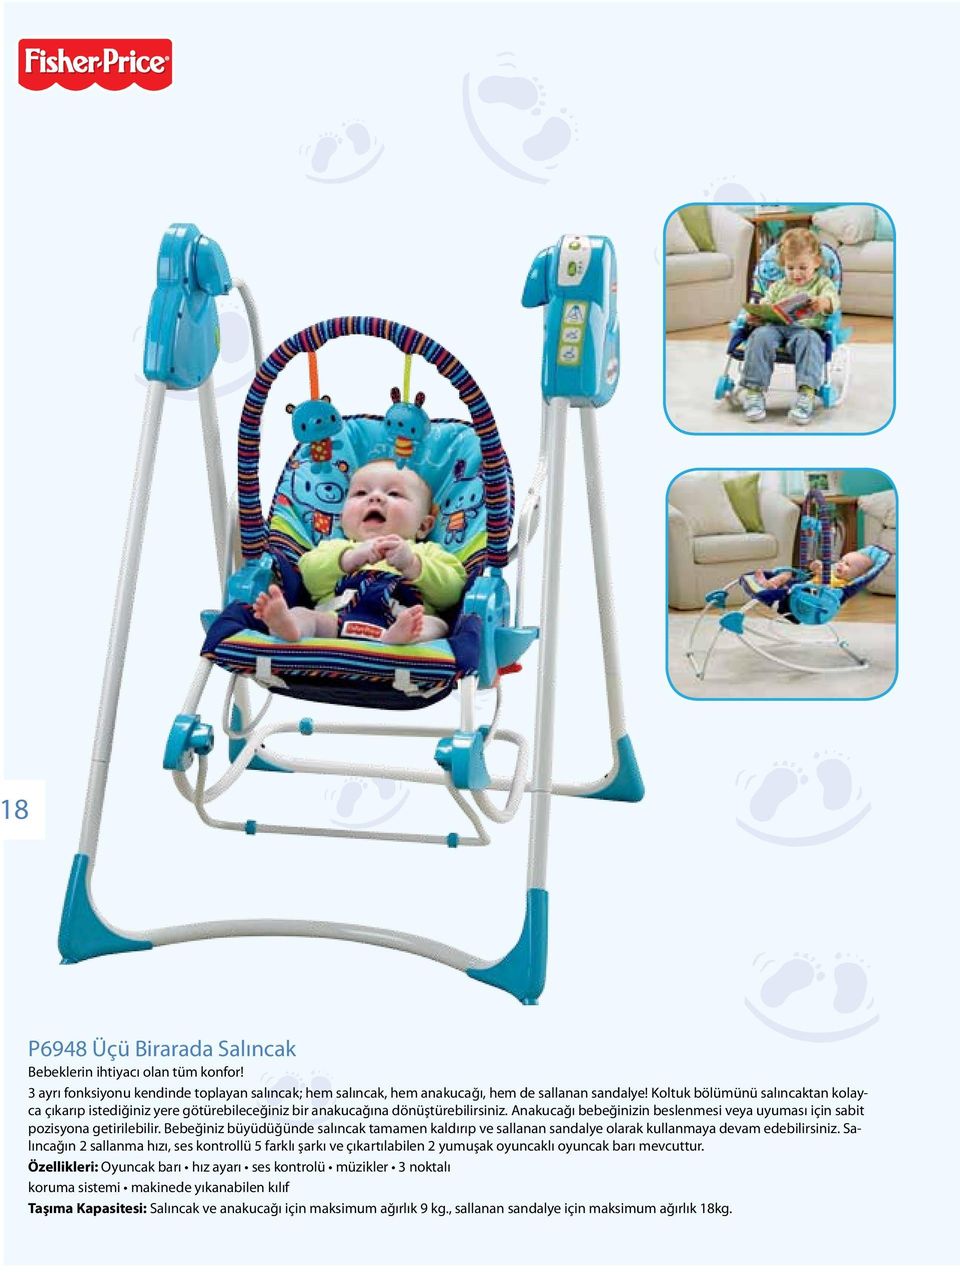 Bebeğiniz büyüdüğünde salıncak tamamen kaldırıp ve sallanan sandalye olarak kullanmaya devam edebilirsiniz.